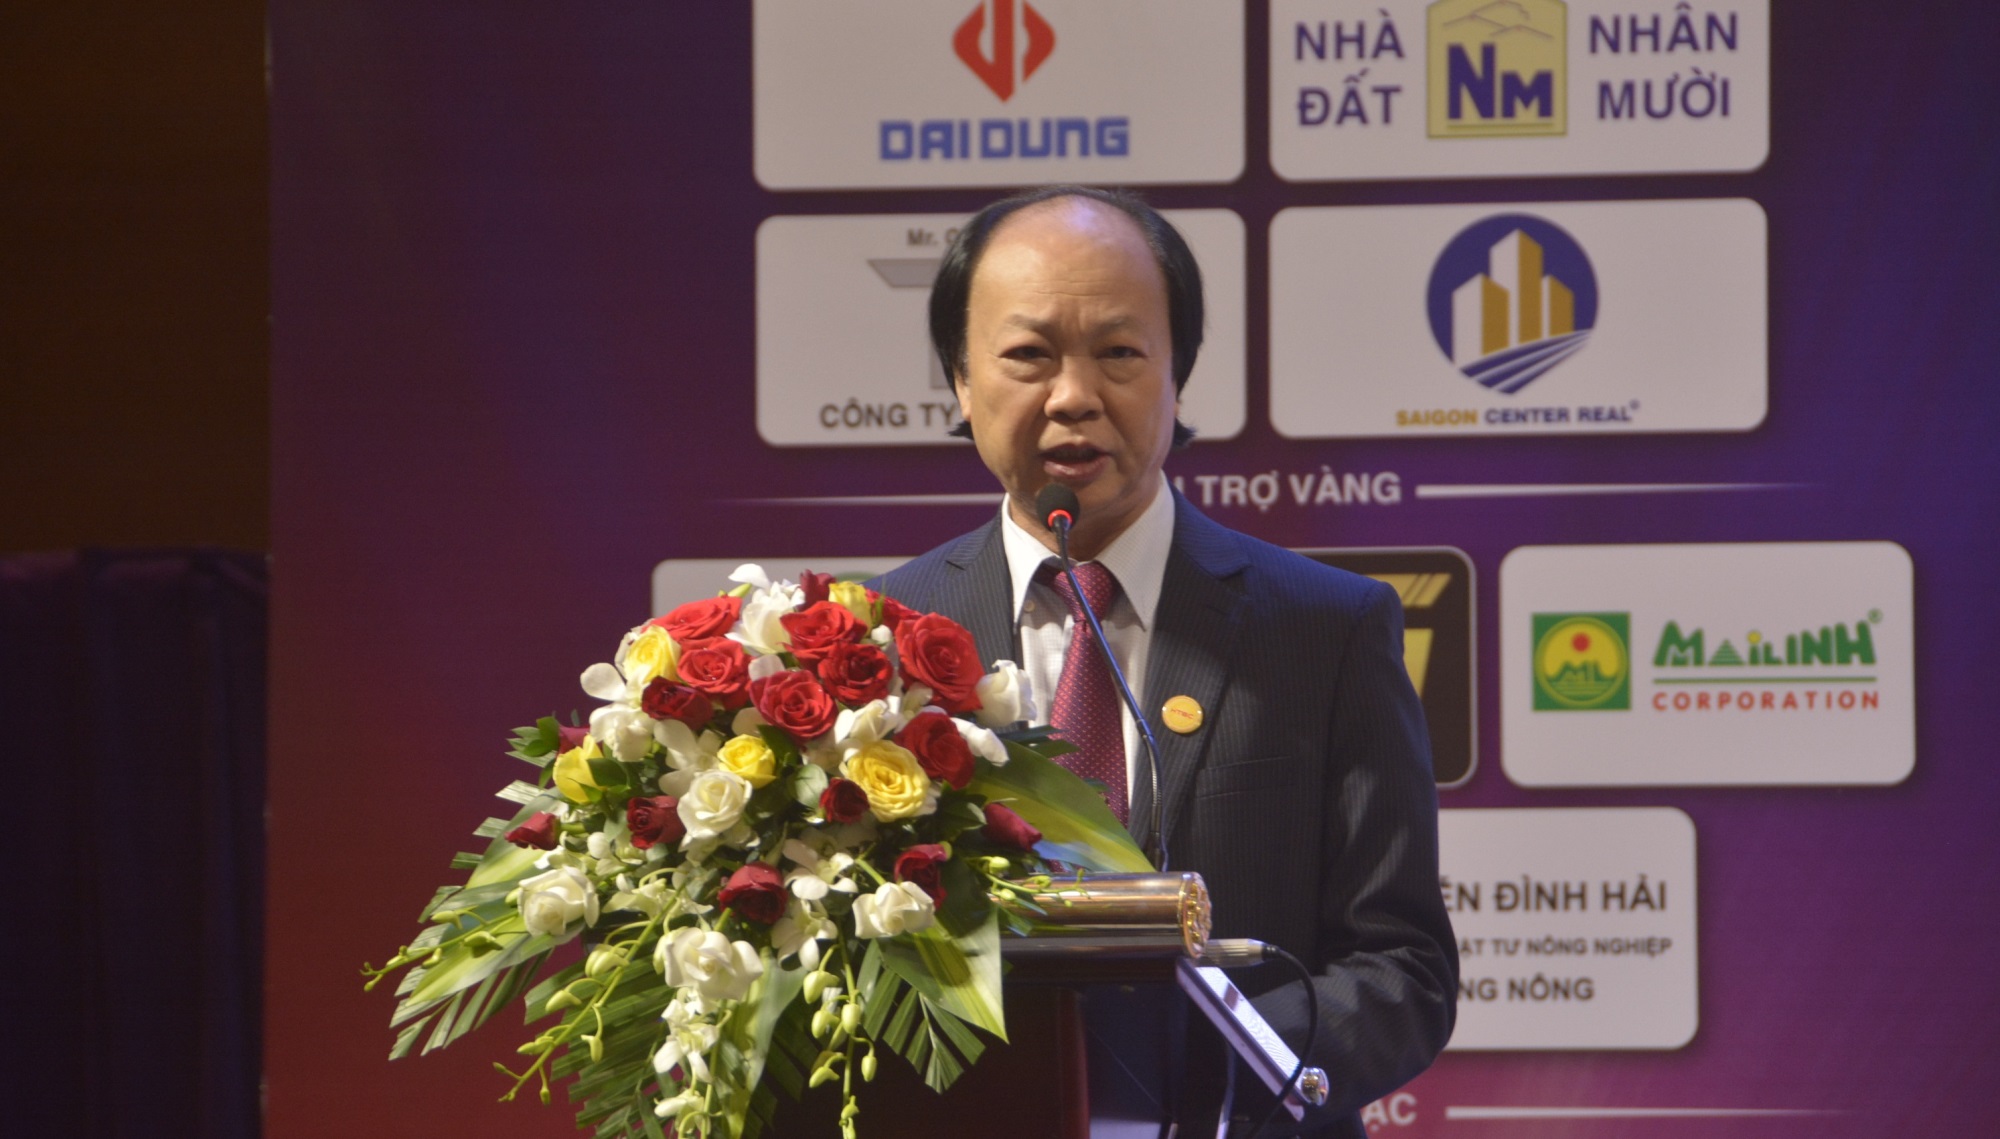 Câu lạc bộ Doanh nhân Thanh Hoá tại TP.HCM kỷ niệm 10 năm thành lập và ra mắt Ban chấp hành mới - Ảnh 2